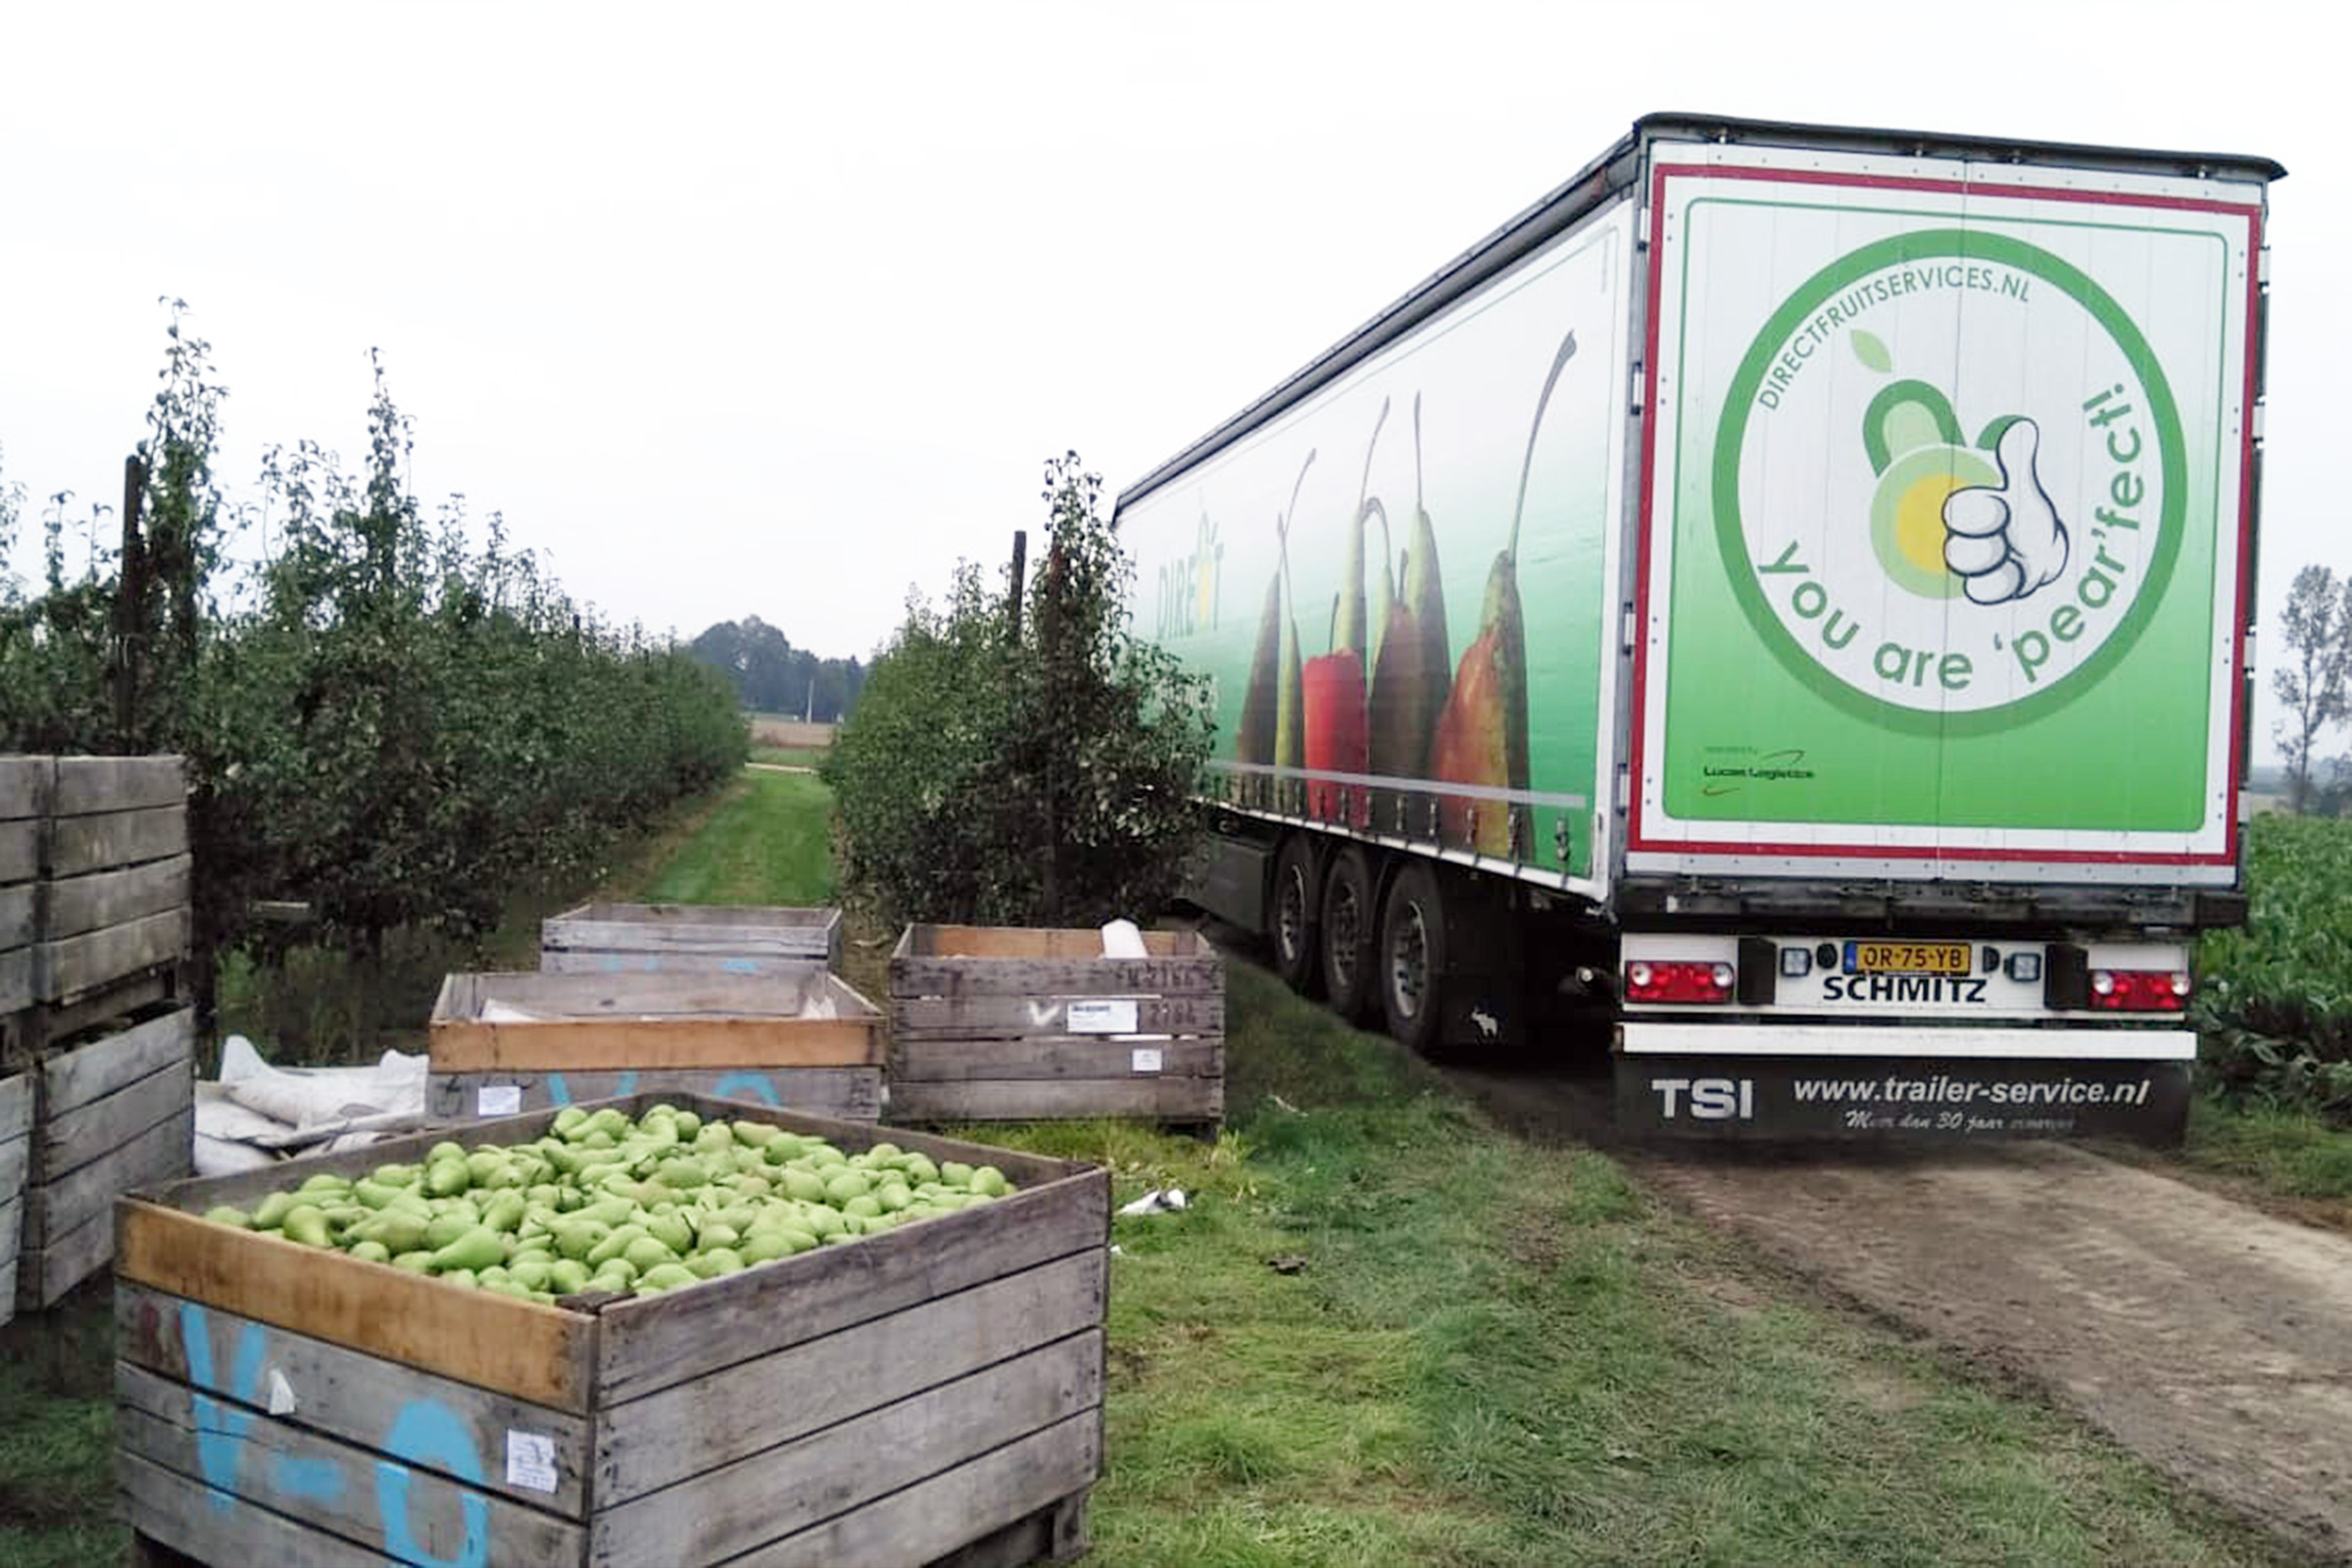 Vrachtwagen van Direct fruitservices in boomgaard met kist vol peren op voorgrond